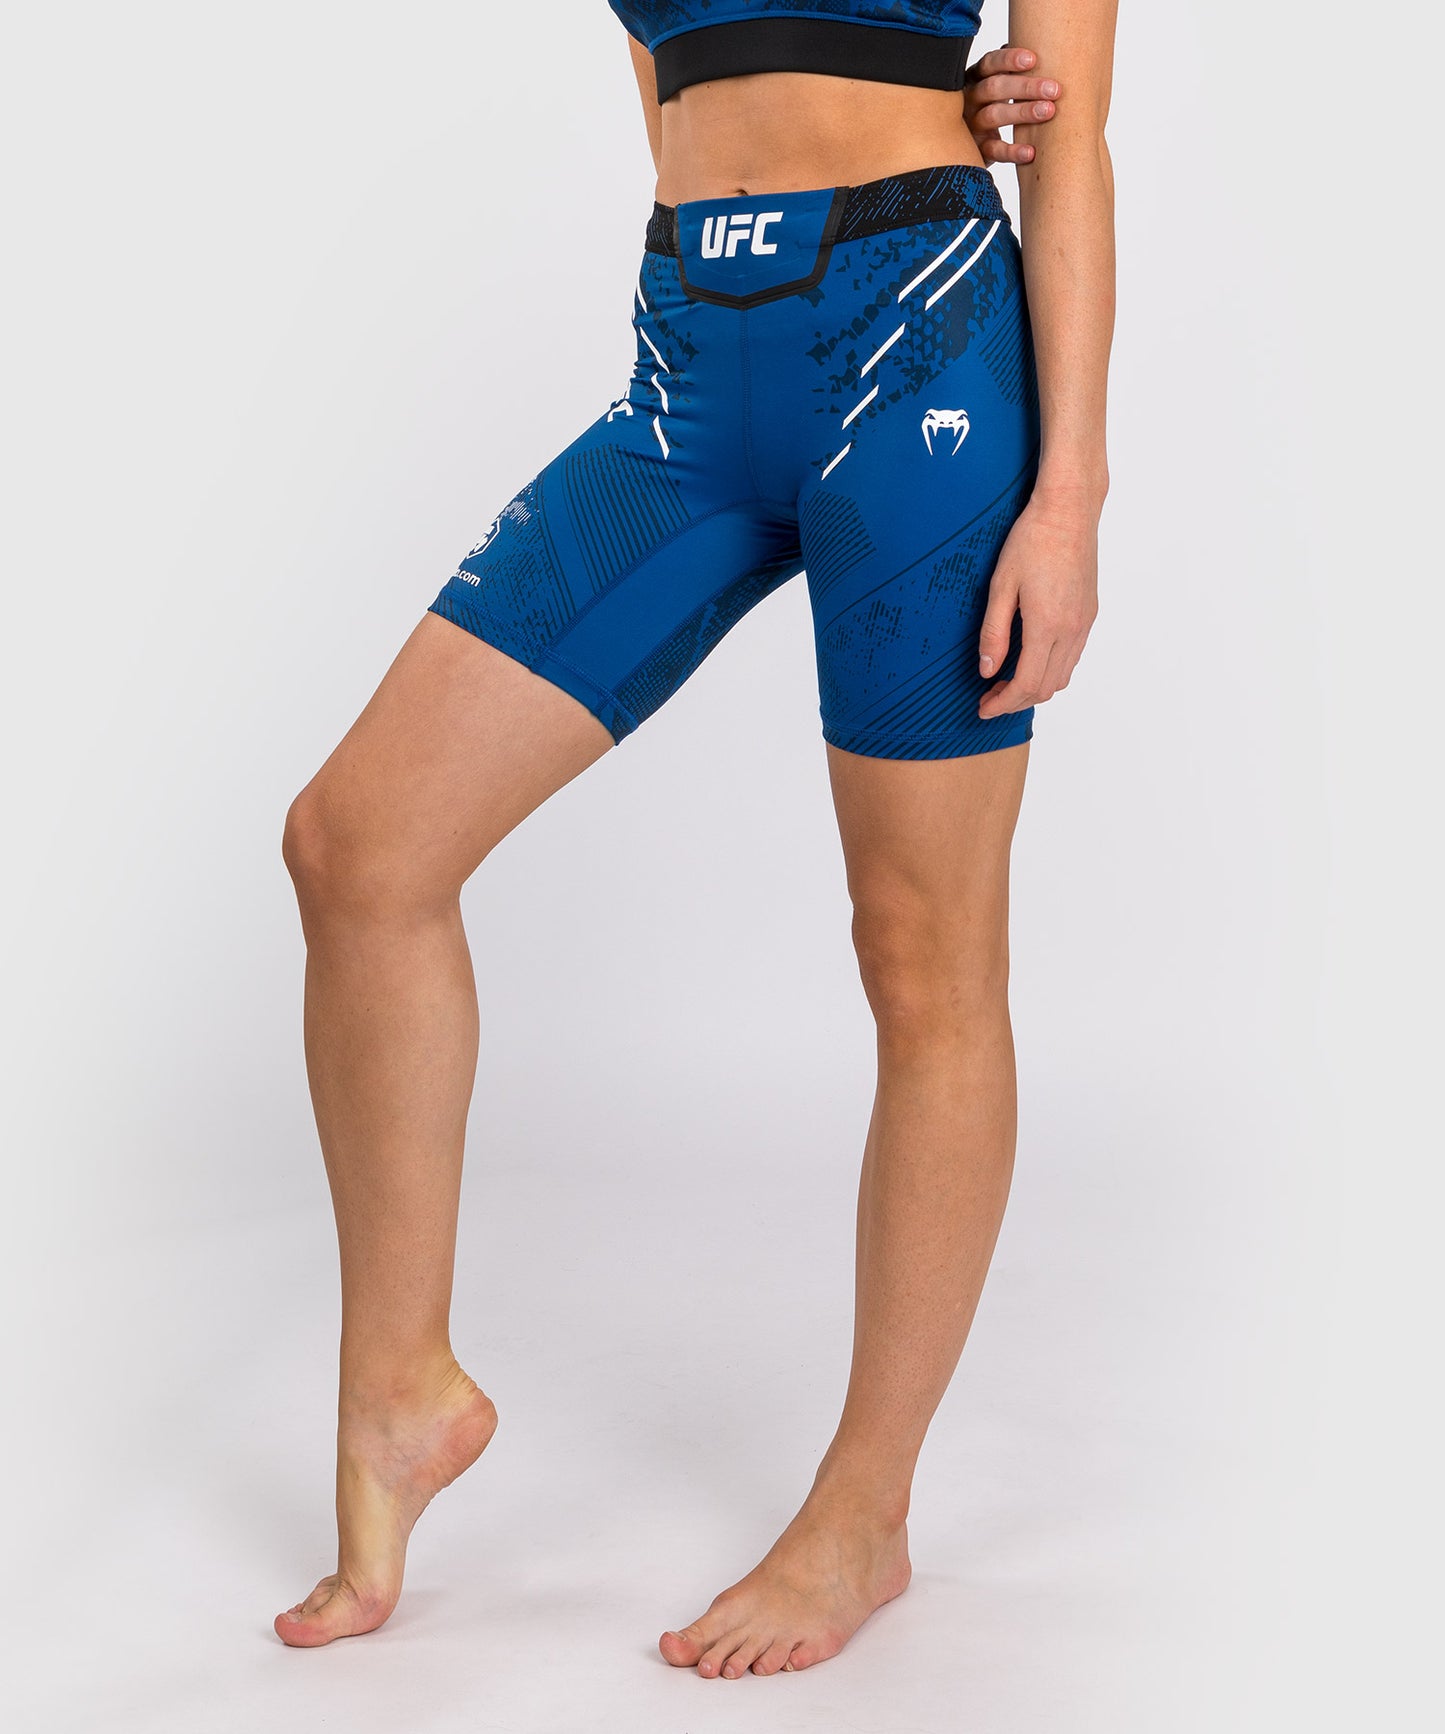 UFC Adrenaline by Venum Authentic Fight Night Vale Tudo Short für Frauen - Lange Passform - Blau